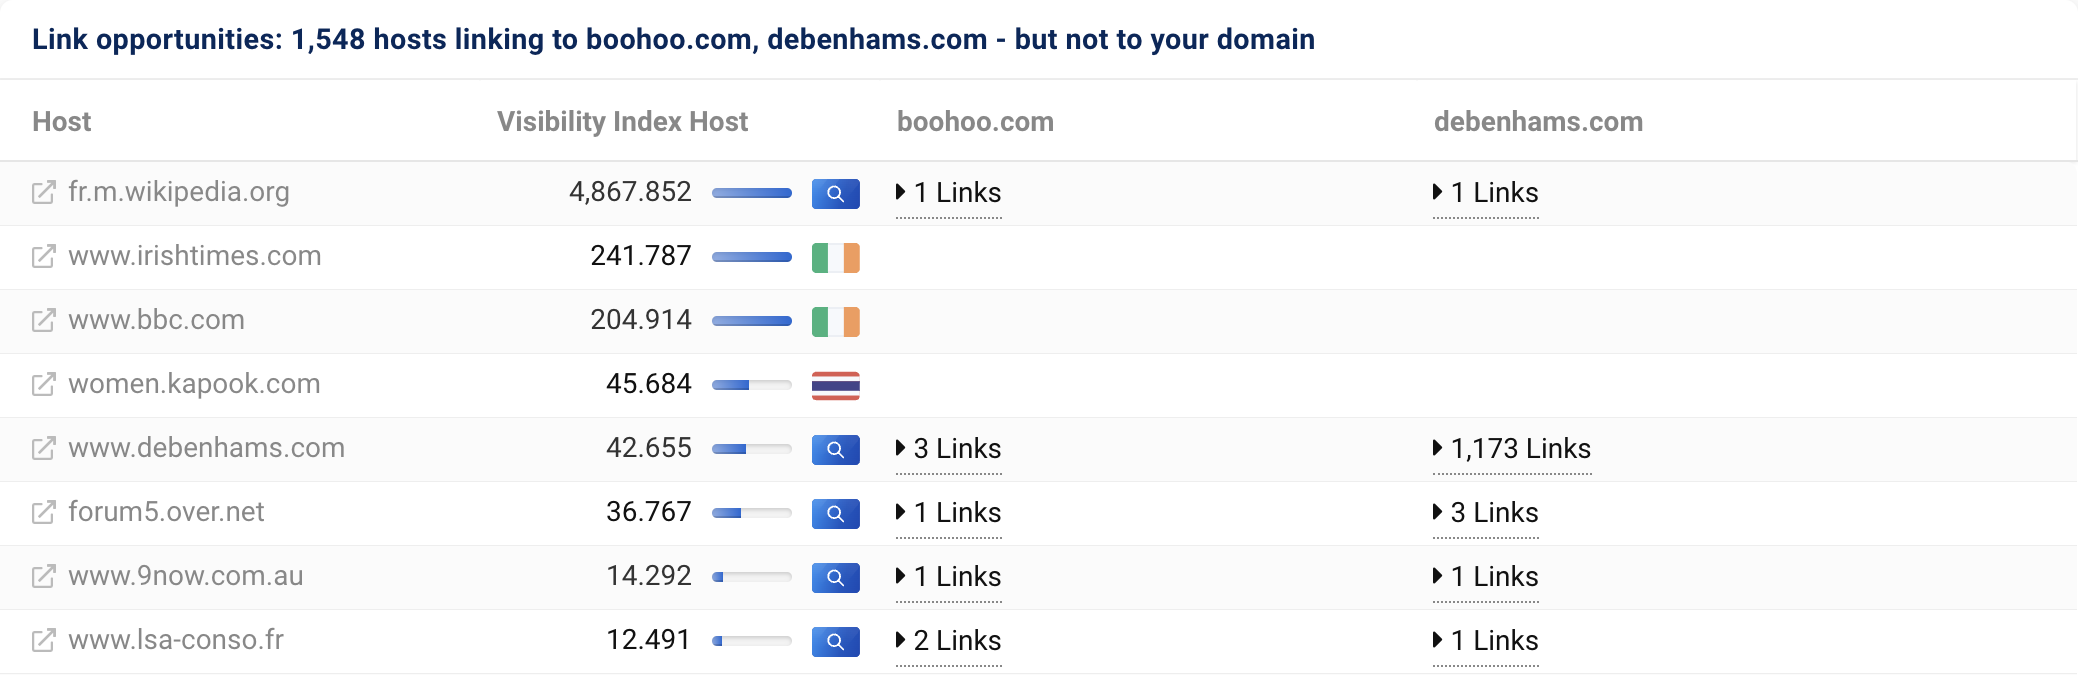 1,548 hosts link to boohoo.com and debenhams.com, but not to our domain asos.com. 